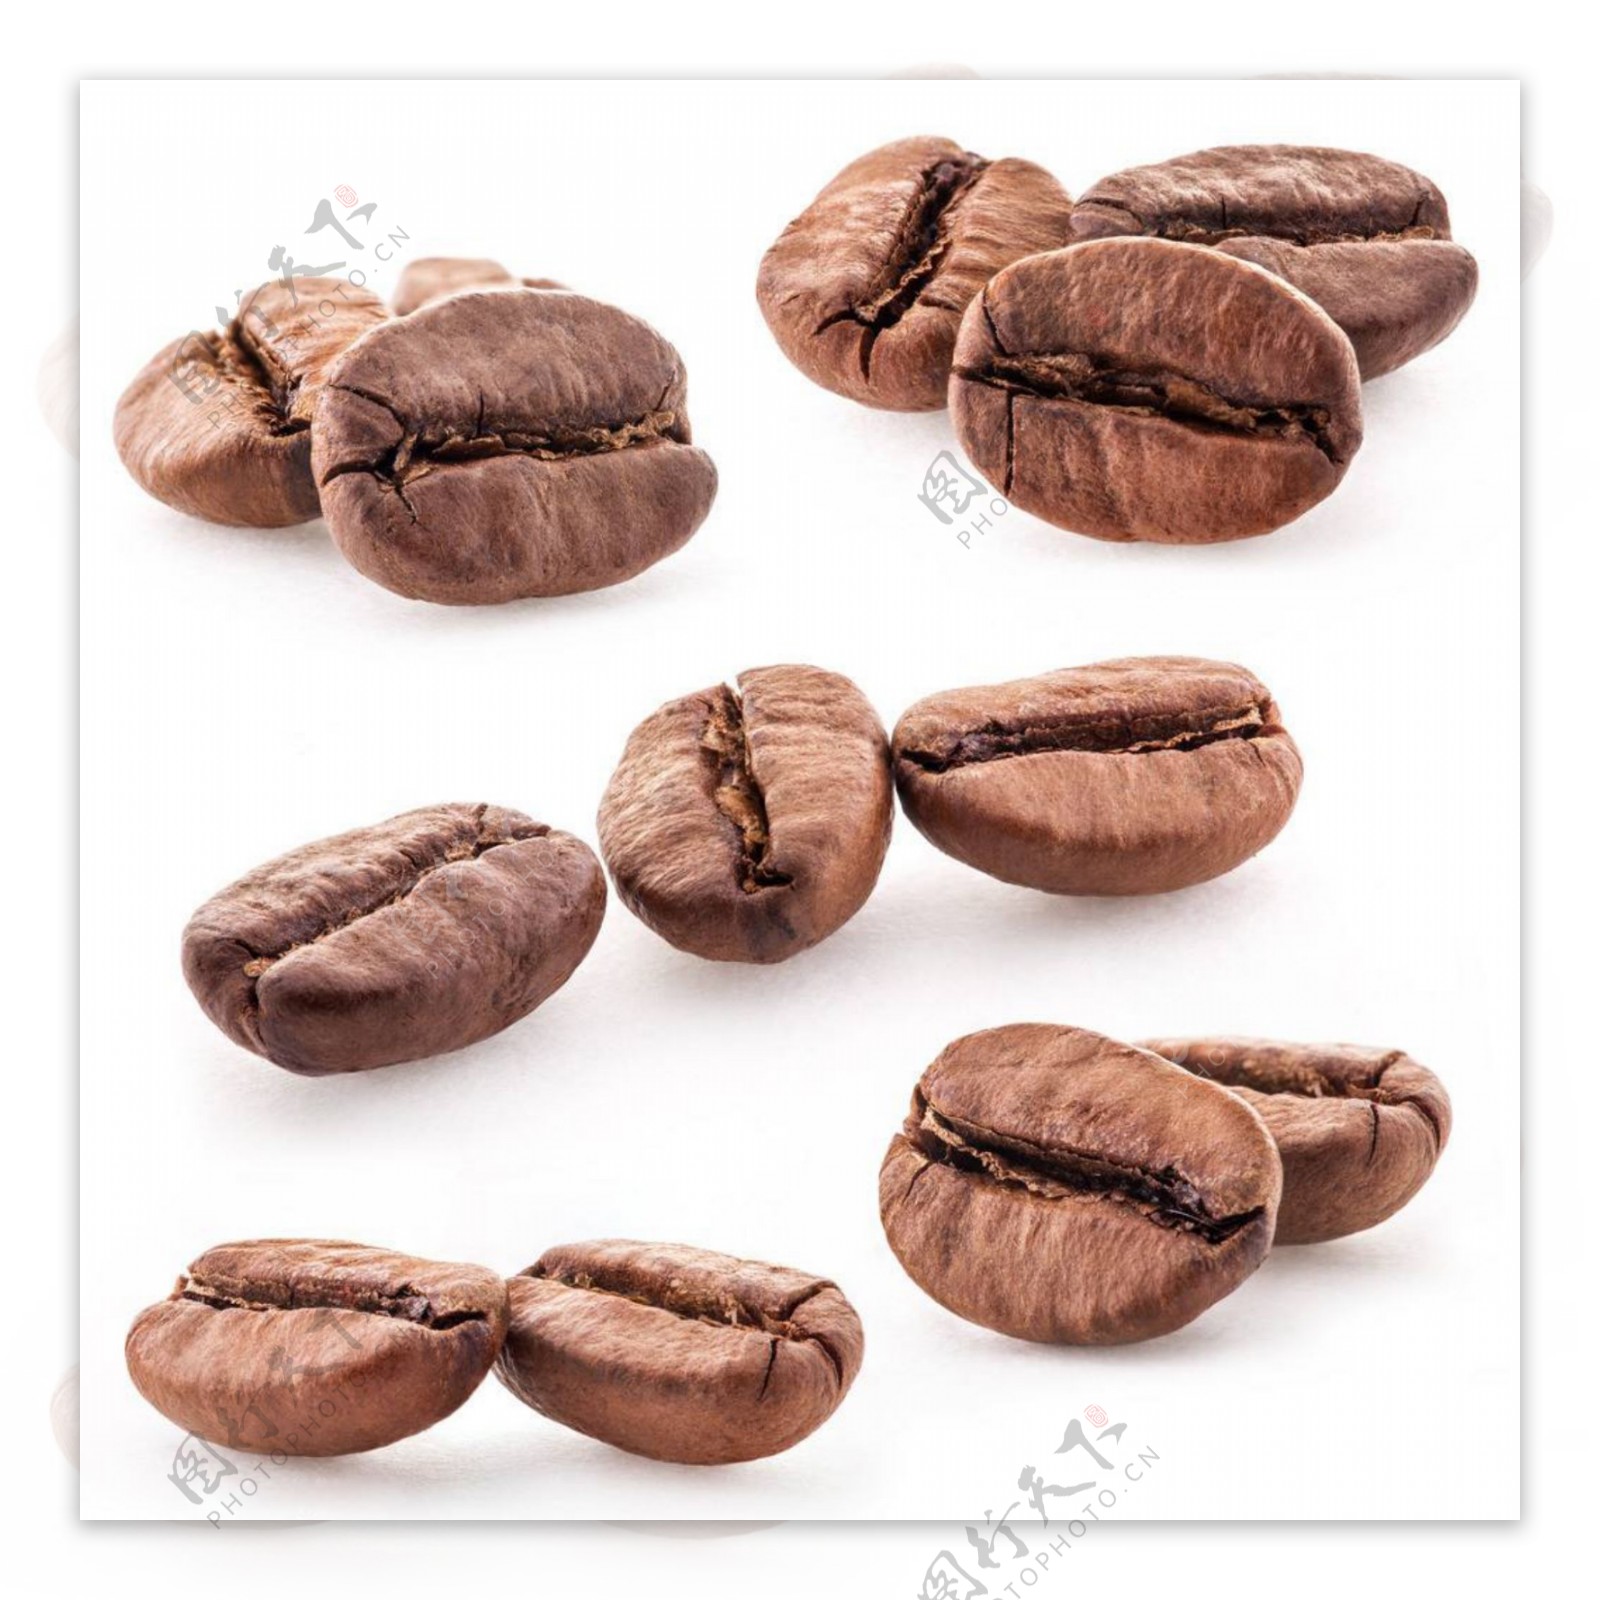 不同形态的高清咖啡豆素材